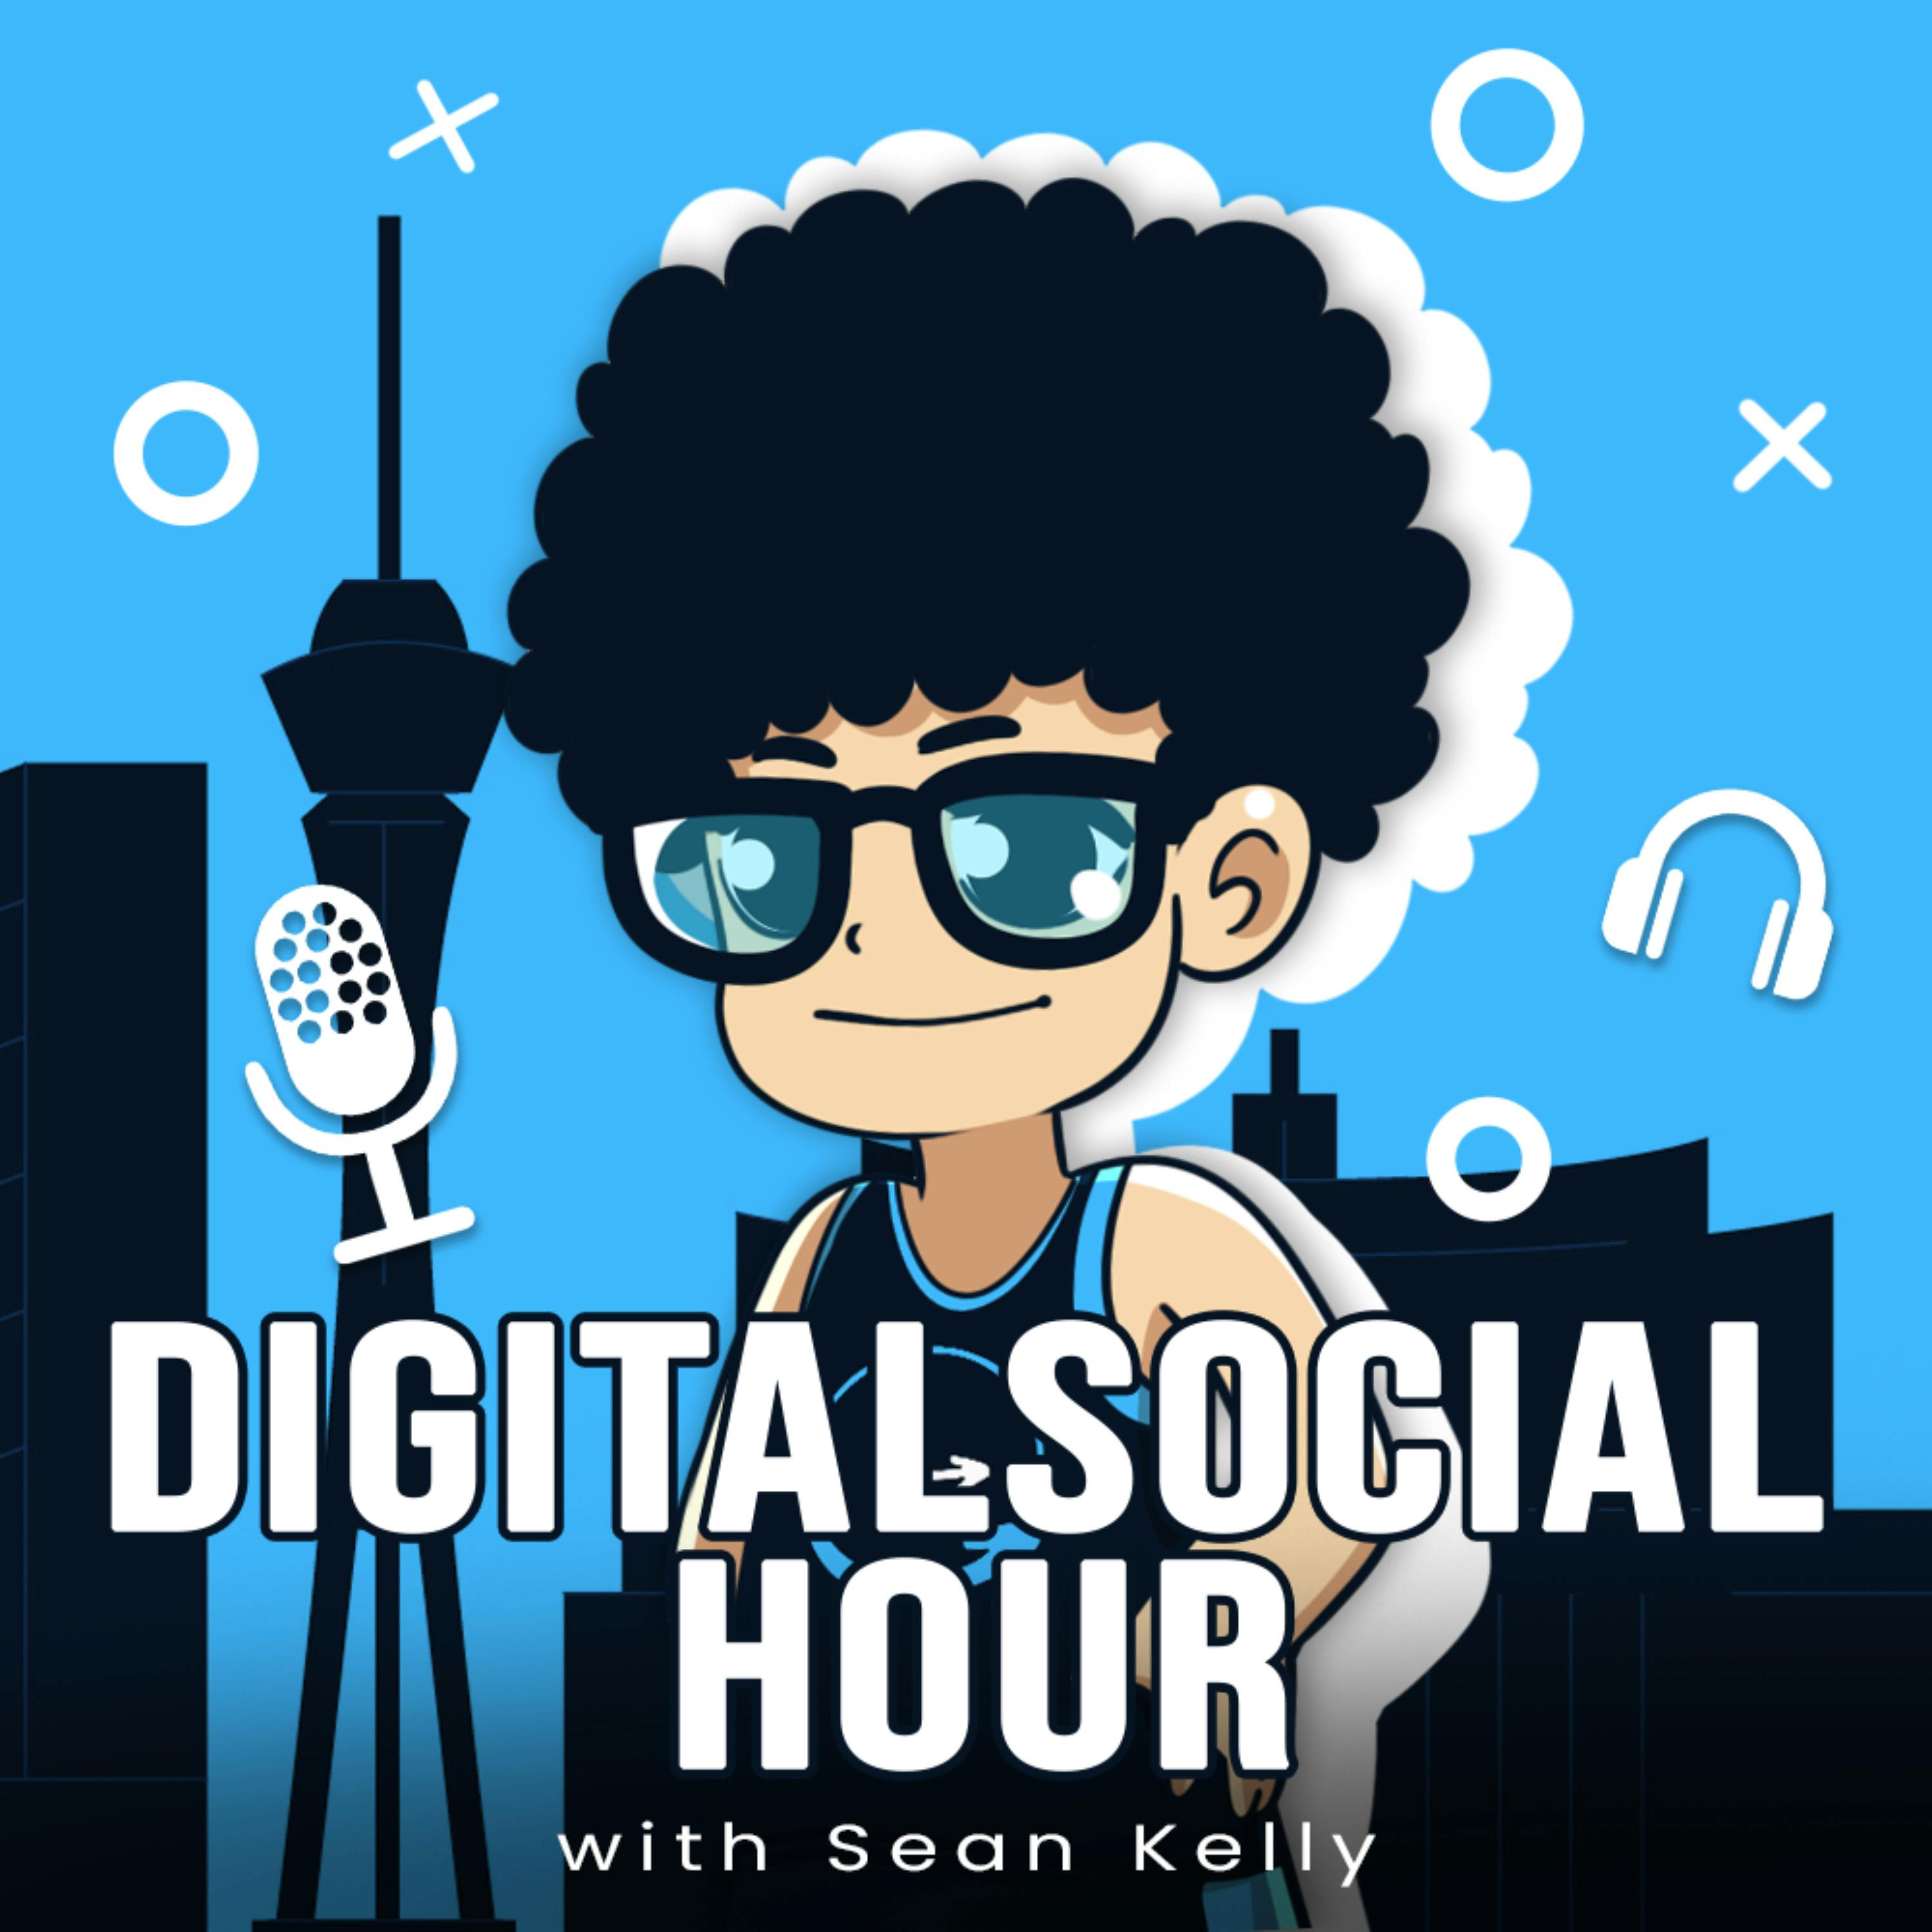 Finding His Wife Using AI | Dan Novaes Digital Social Hour #72